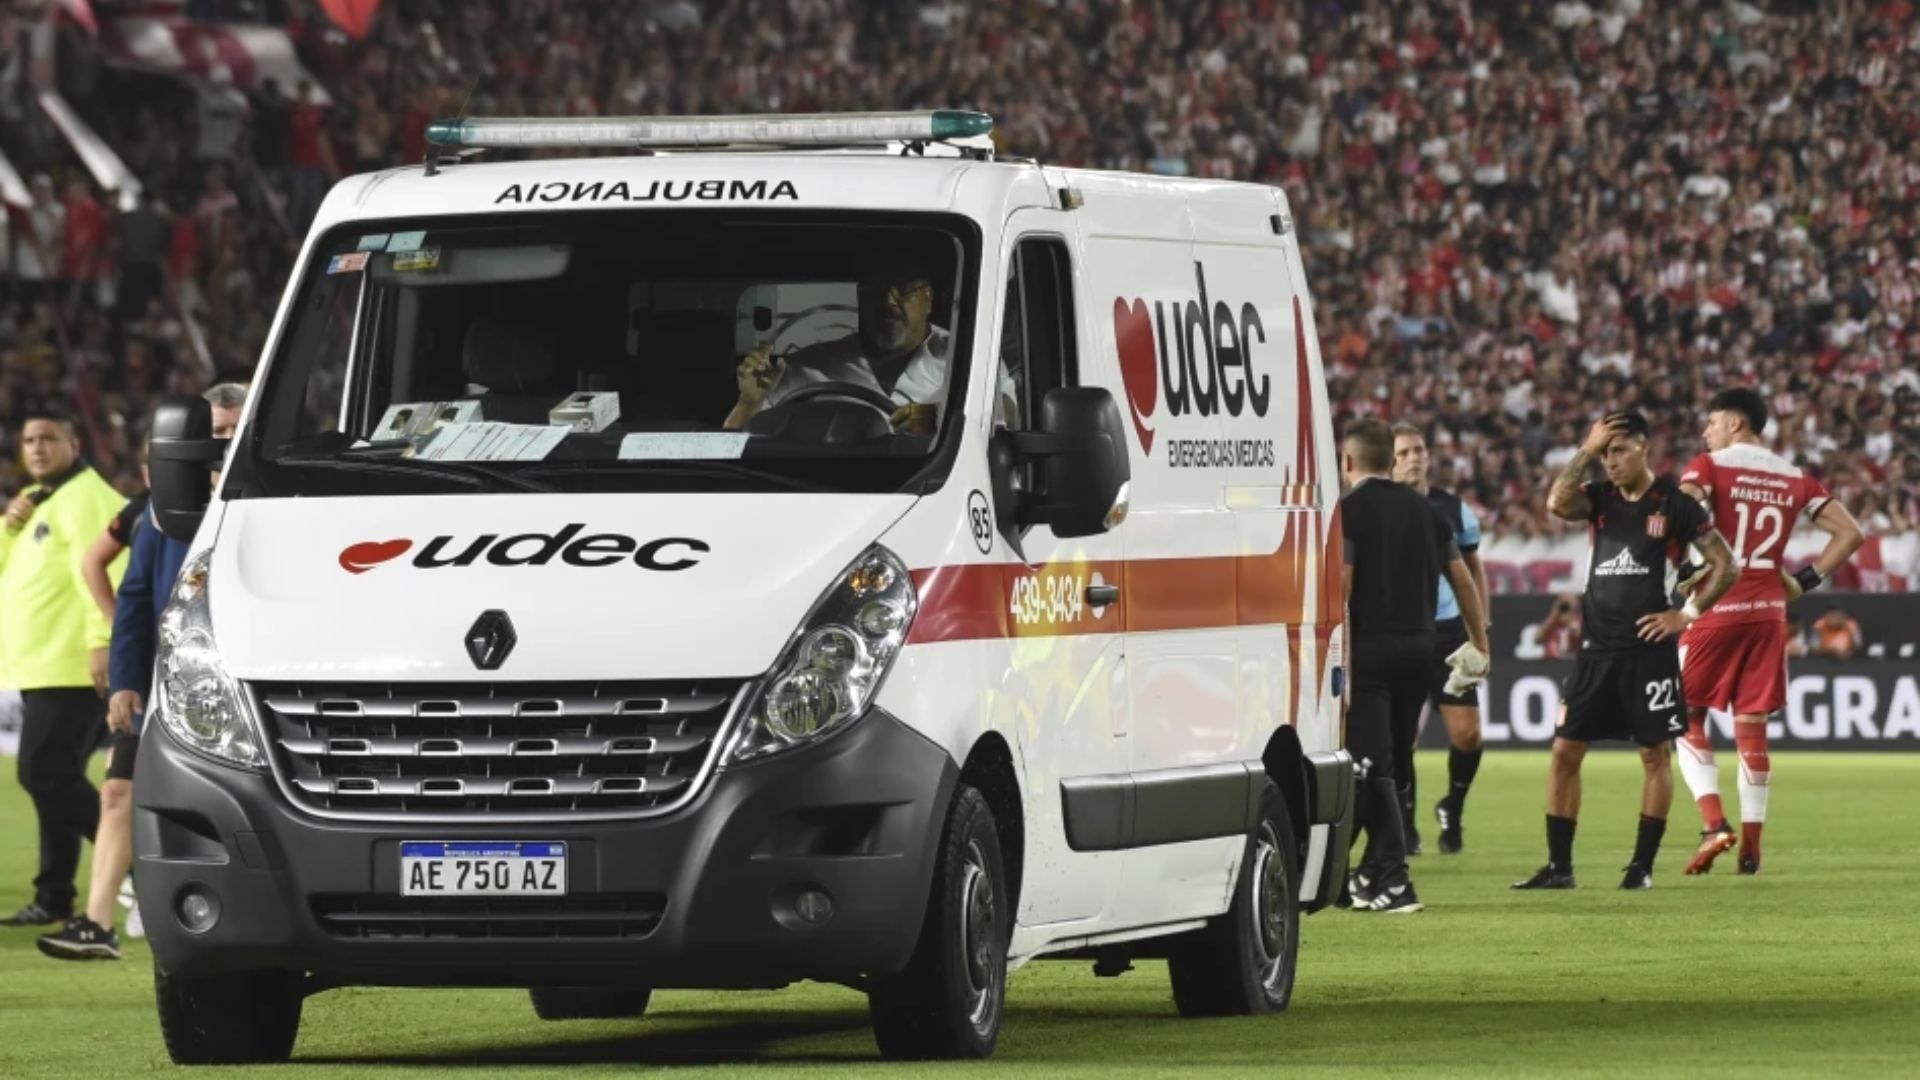 El chileno Javier Altamirano, de Estudiantes de La Plata, es retirado del campo de juego en una ambulancia durante el partido de futbol de la Copa de la Liga Argentina